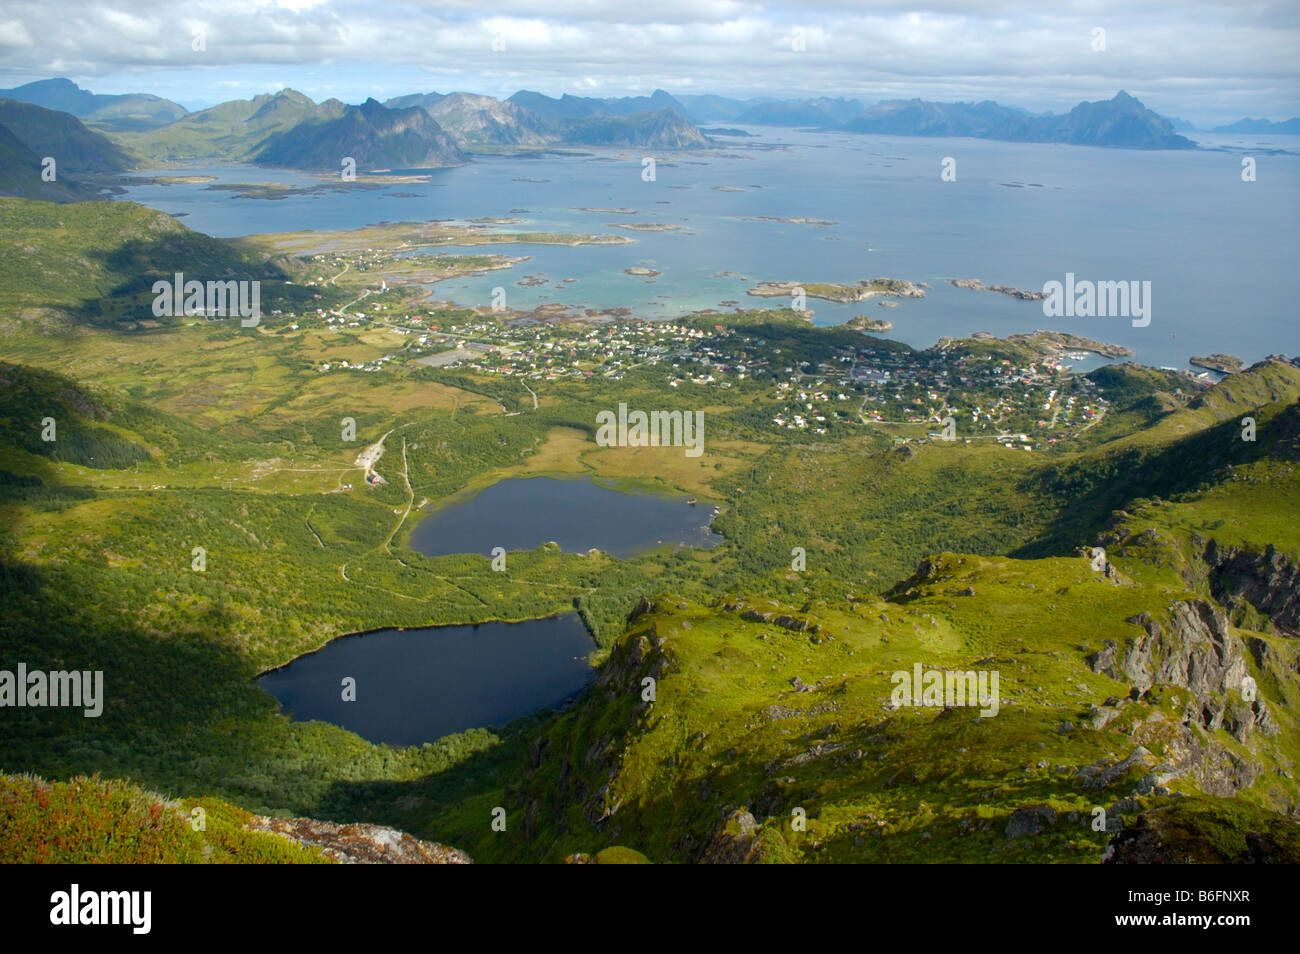 Vue de dessus sur le Saharien avec deux lacs et le paysage environnant, Vestvagoya, Lofoten, Norway, Scandinavia, Europe Banque D'Images